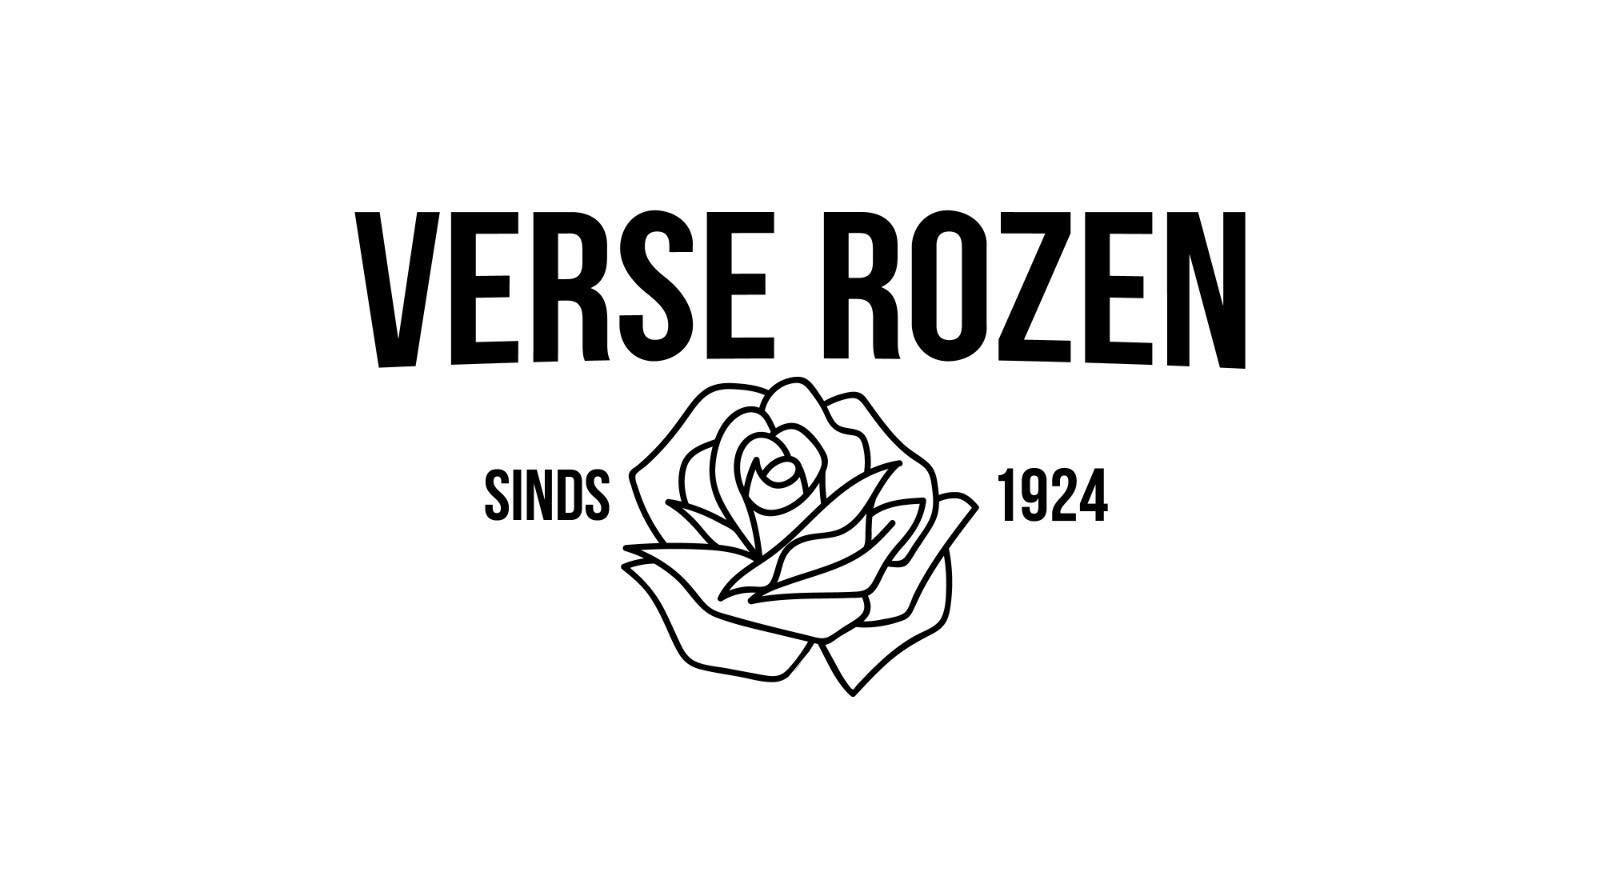 Verse Rozen logo.jpg